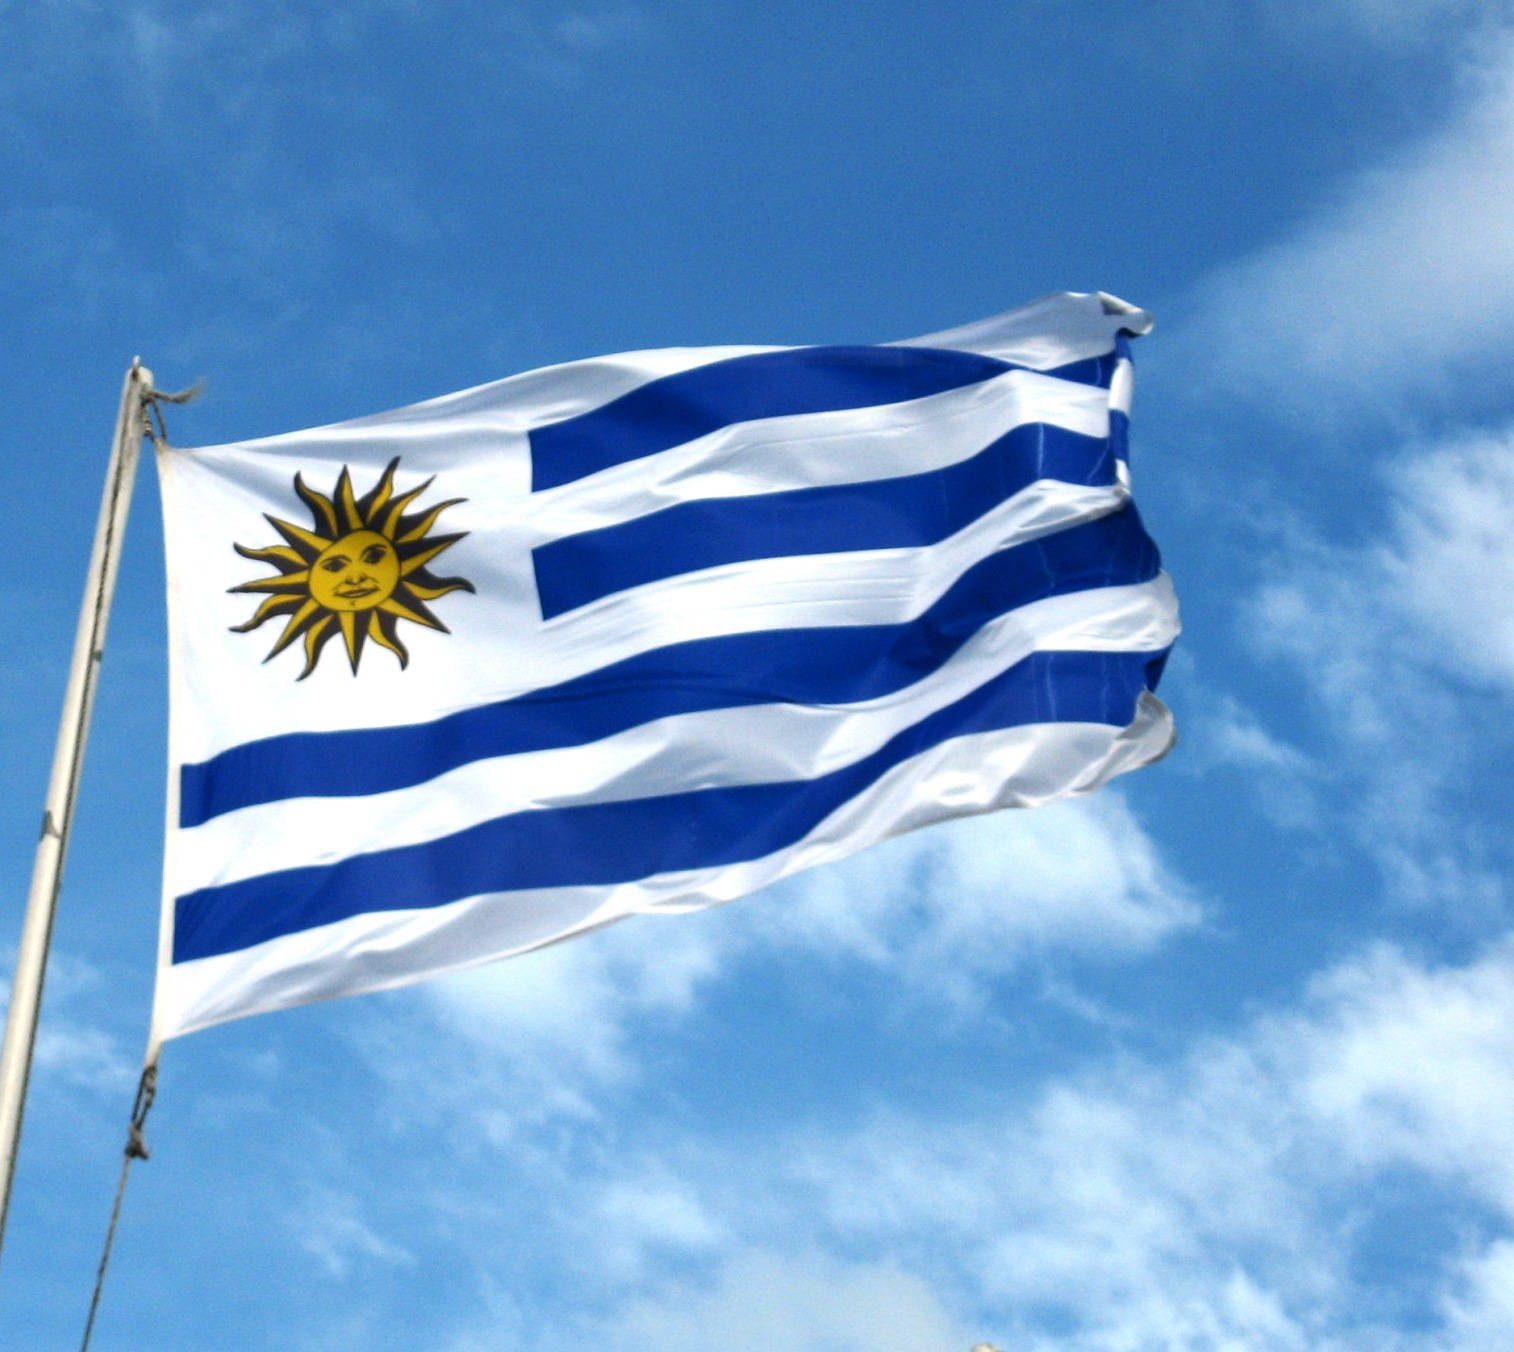 Uruguay Flag On A Pole